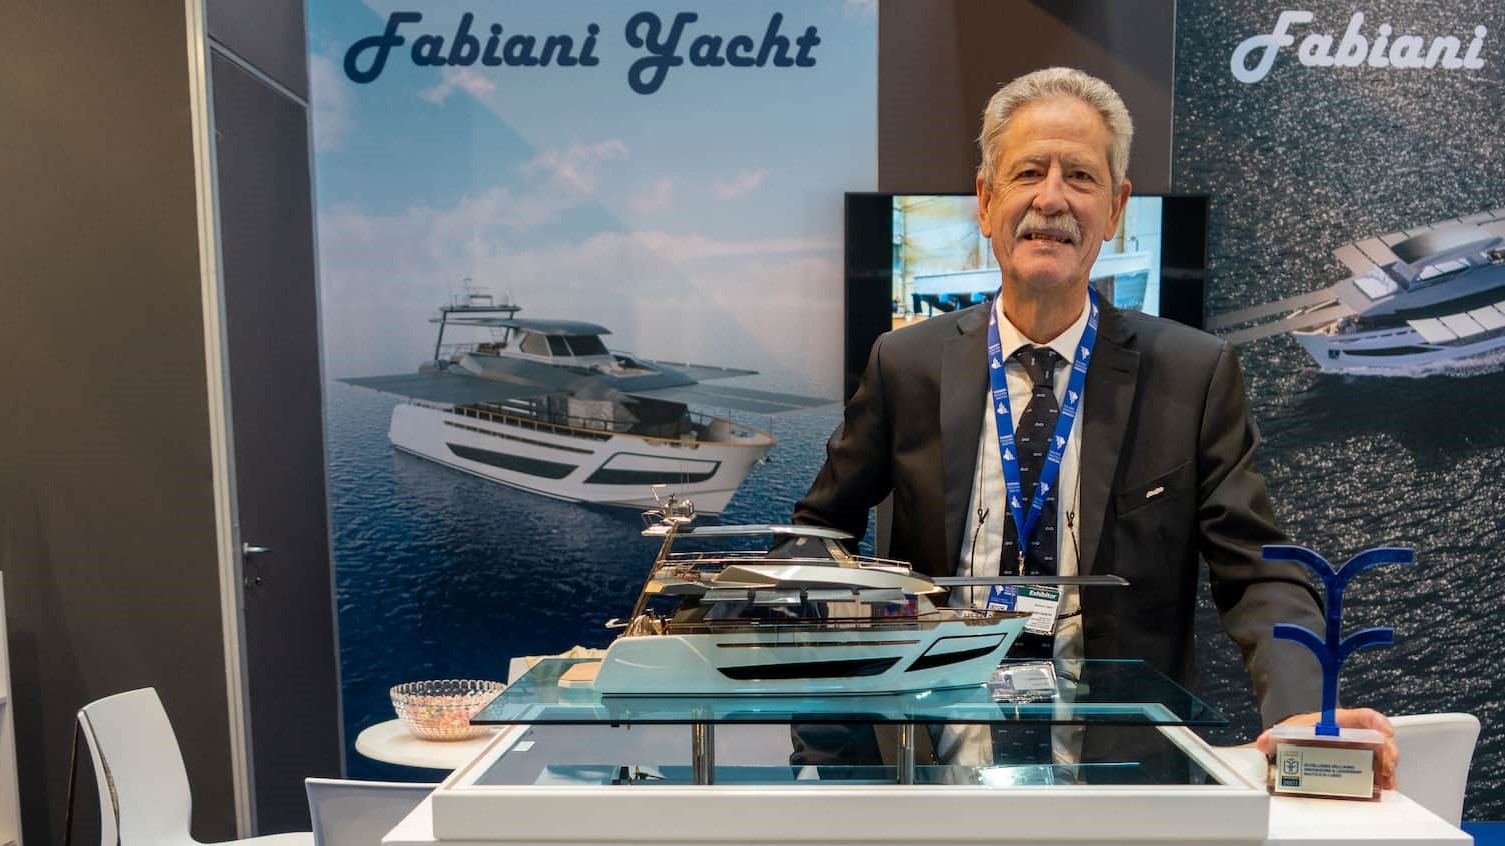 Growing interest in Fabiani Yacht